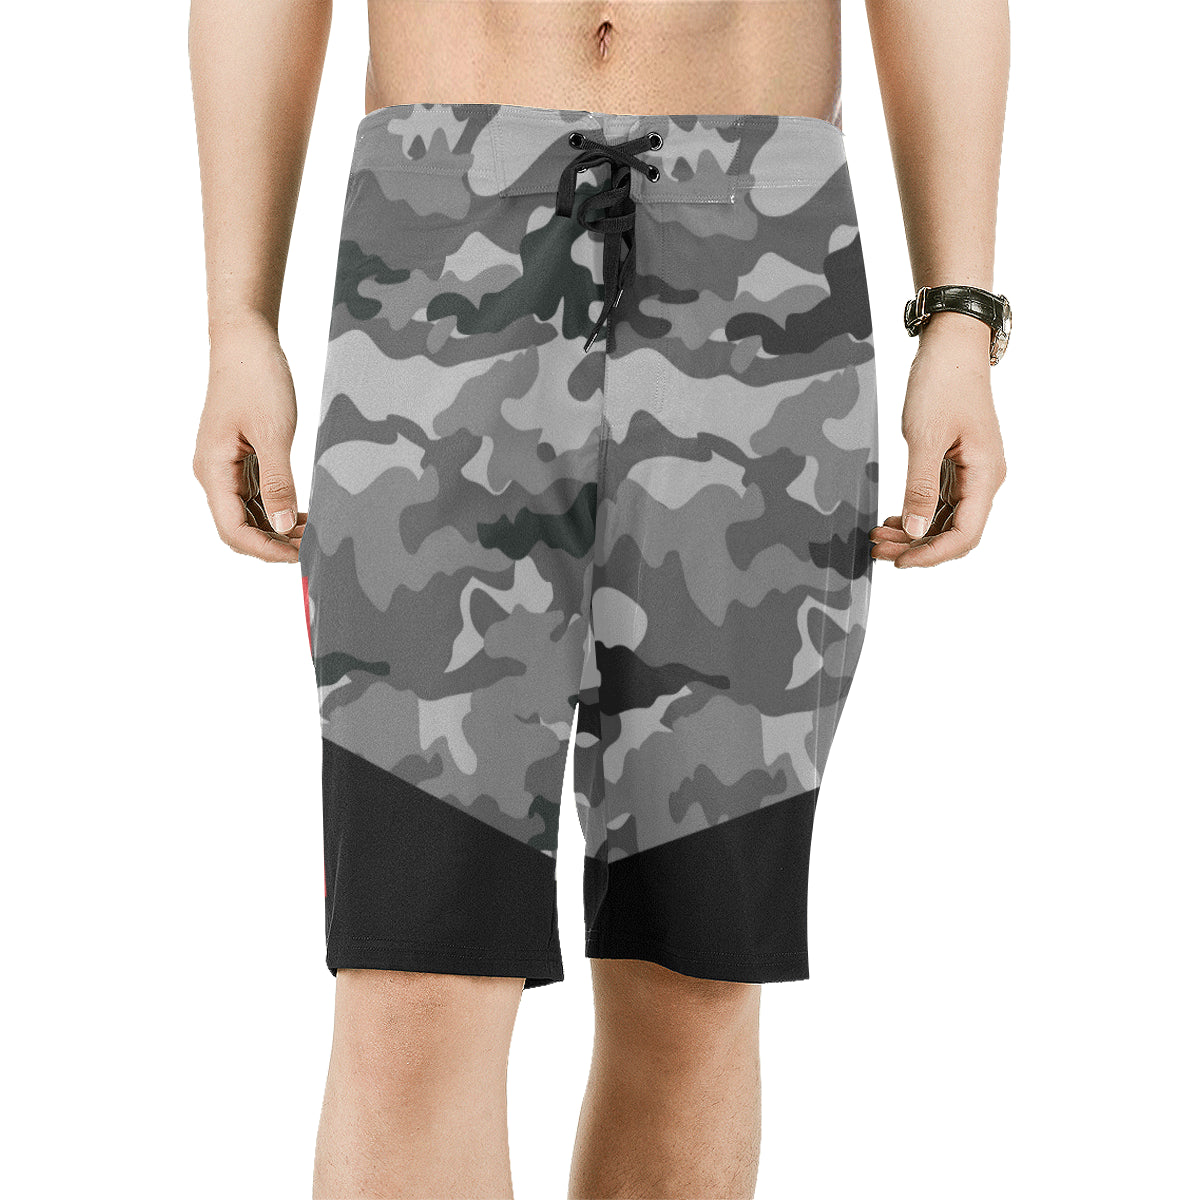 Guam Two-Tone Gray Camo Board Shorts